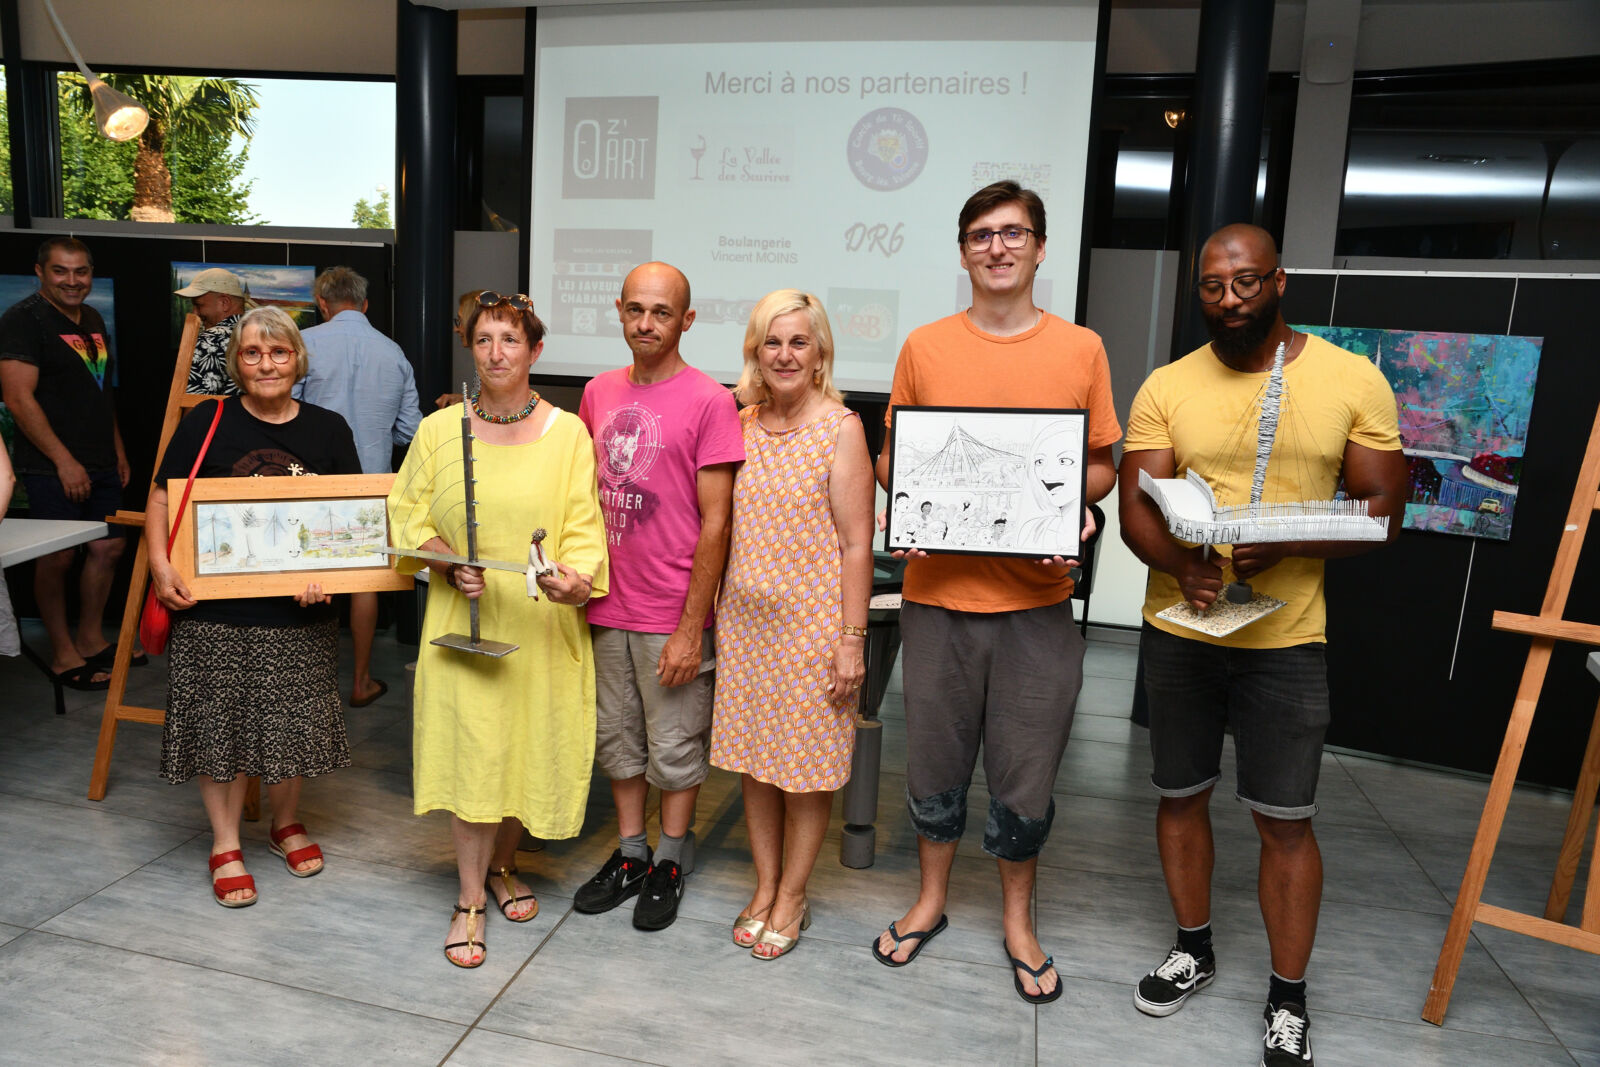 Concours des artistes lors des Fêtes du Rhône : Une célébration artistique de la passerelle de Bourg-lès-Valence